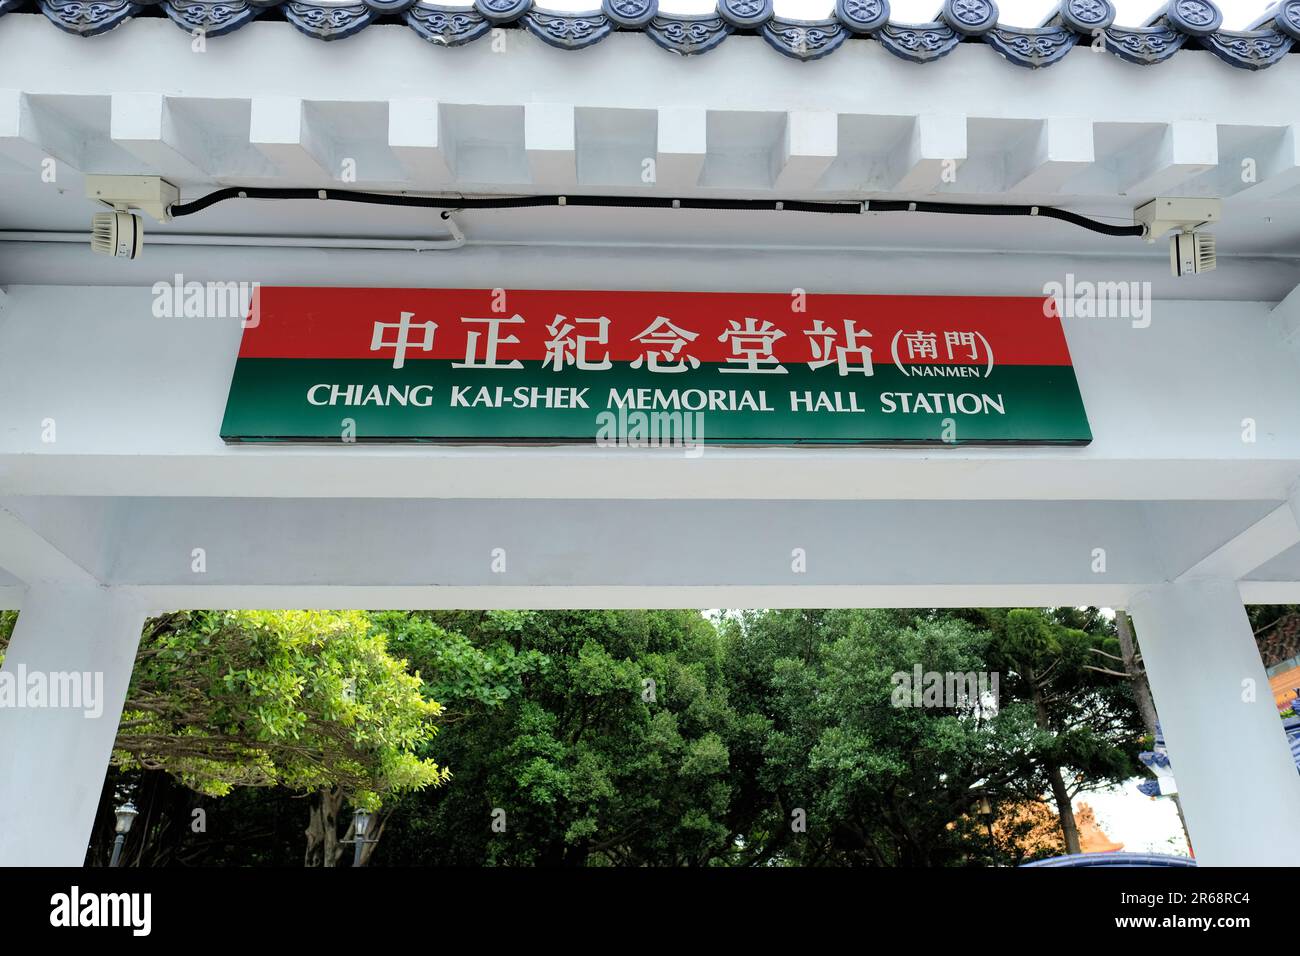 Señal en la estación Chiang Kai-shek Memorial Hall, también llamada Nanmen; una estación de metro en Taipei, Taiwán servida por el MRT. Foto de stock